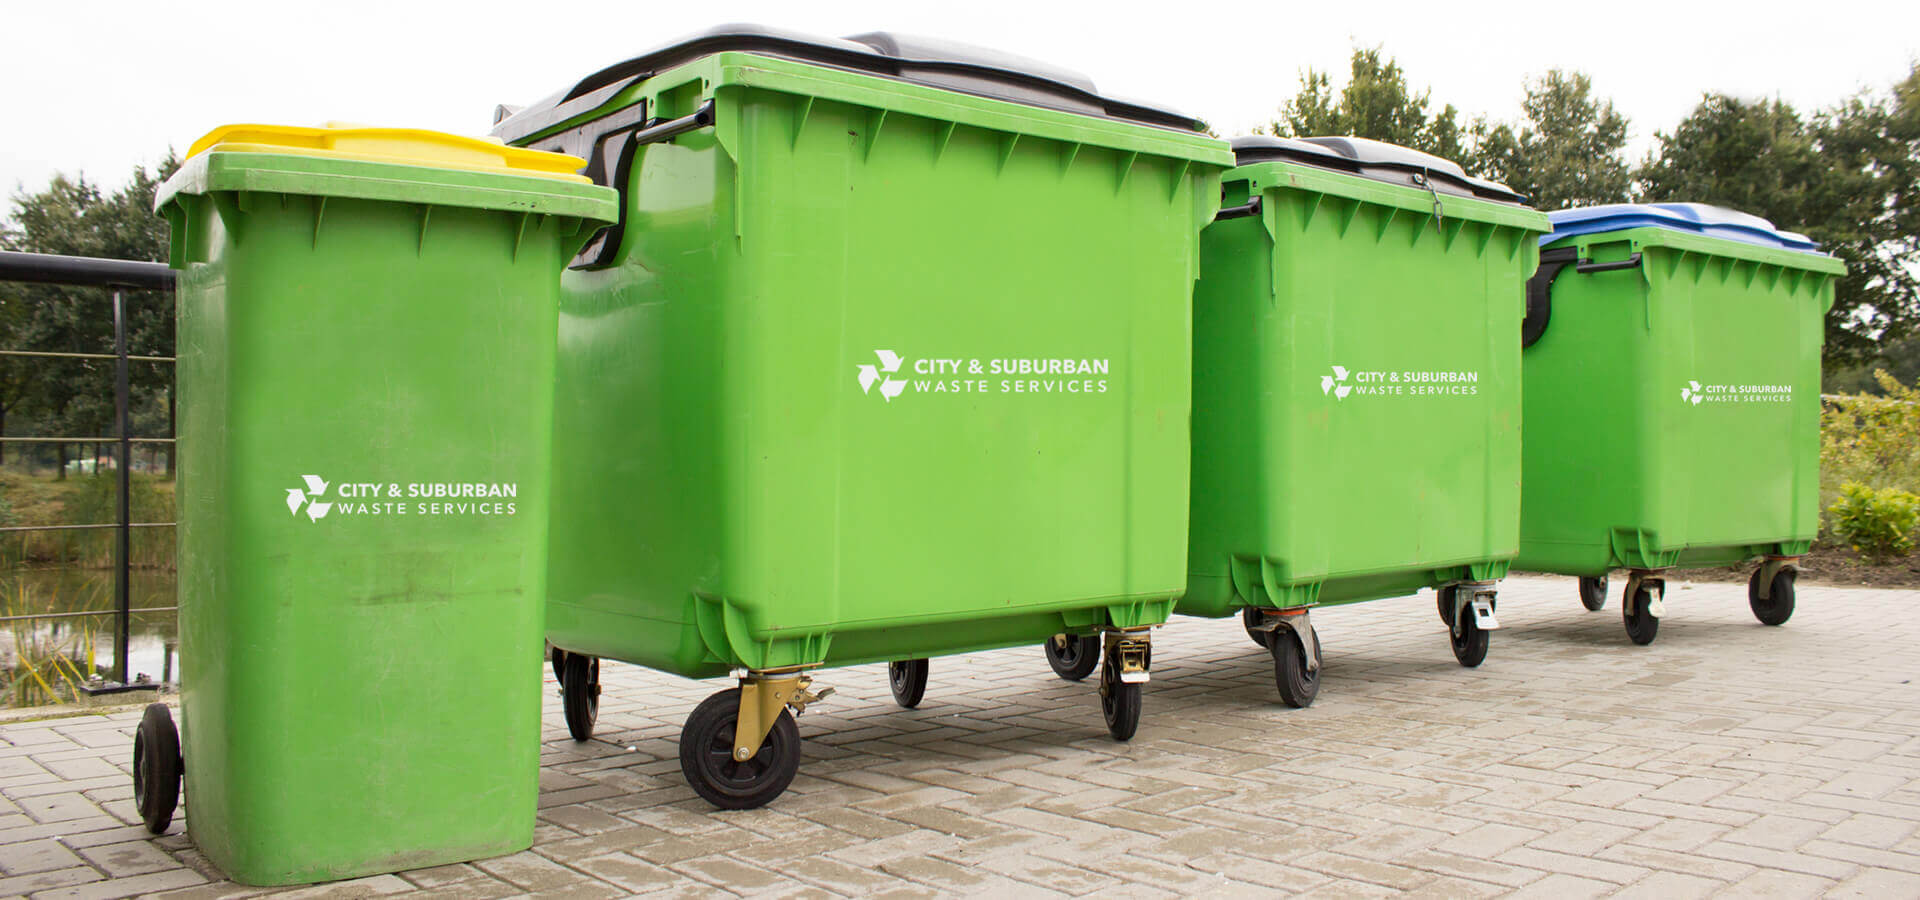 City & Suburban Waste Services Waste Bins